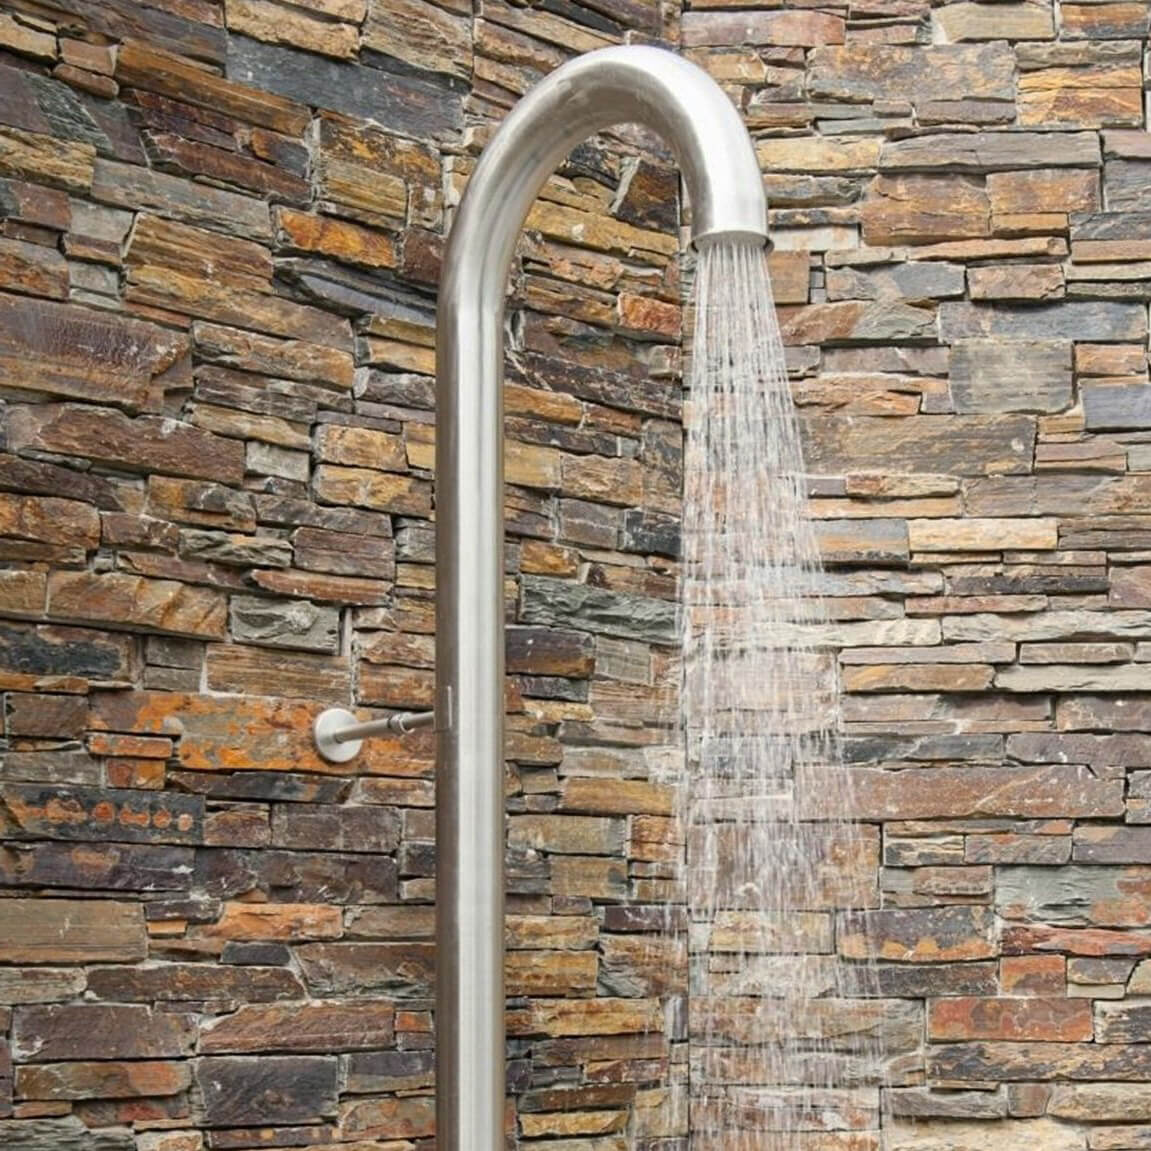 Nerezová venkovní sprcha JEE-O original připevněná úchytem ke kamenné zdi